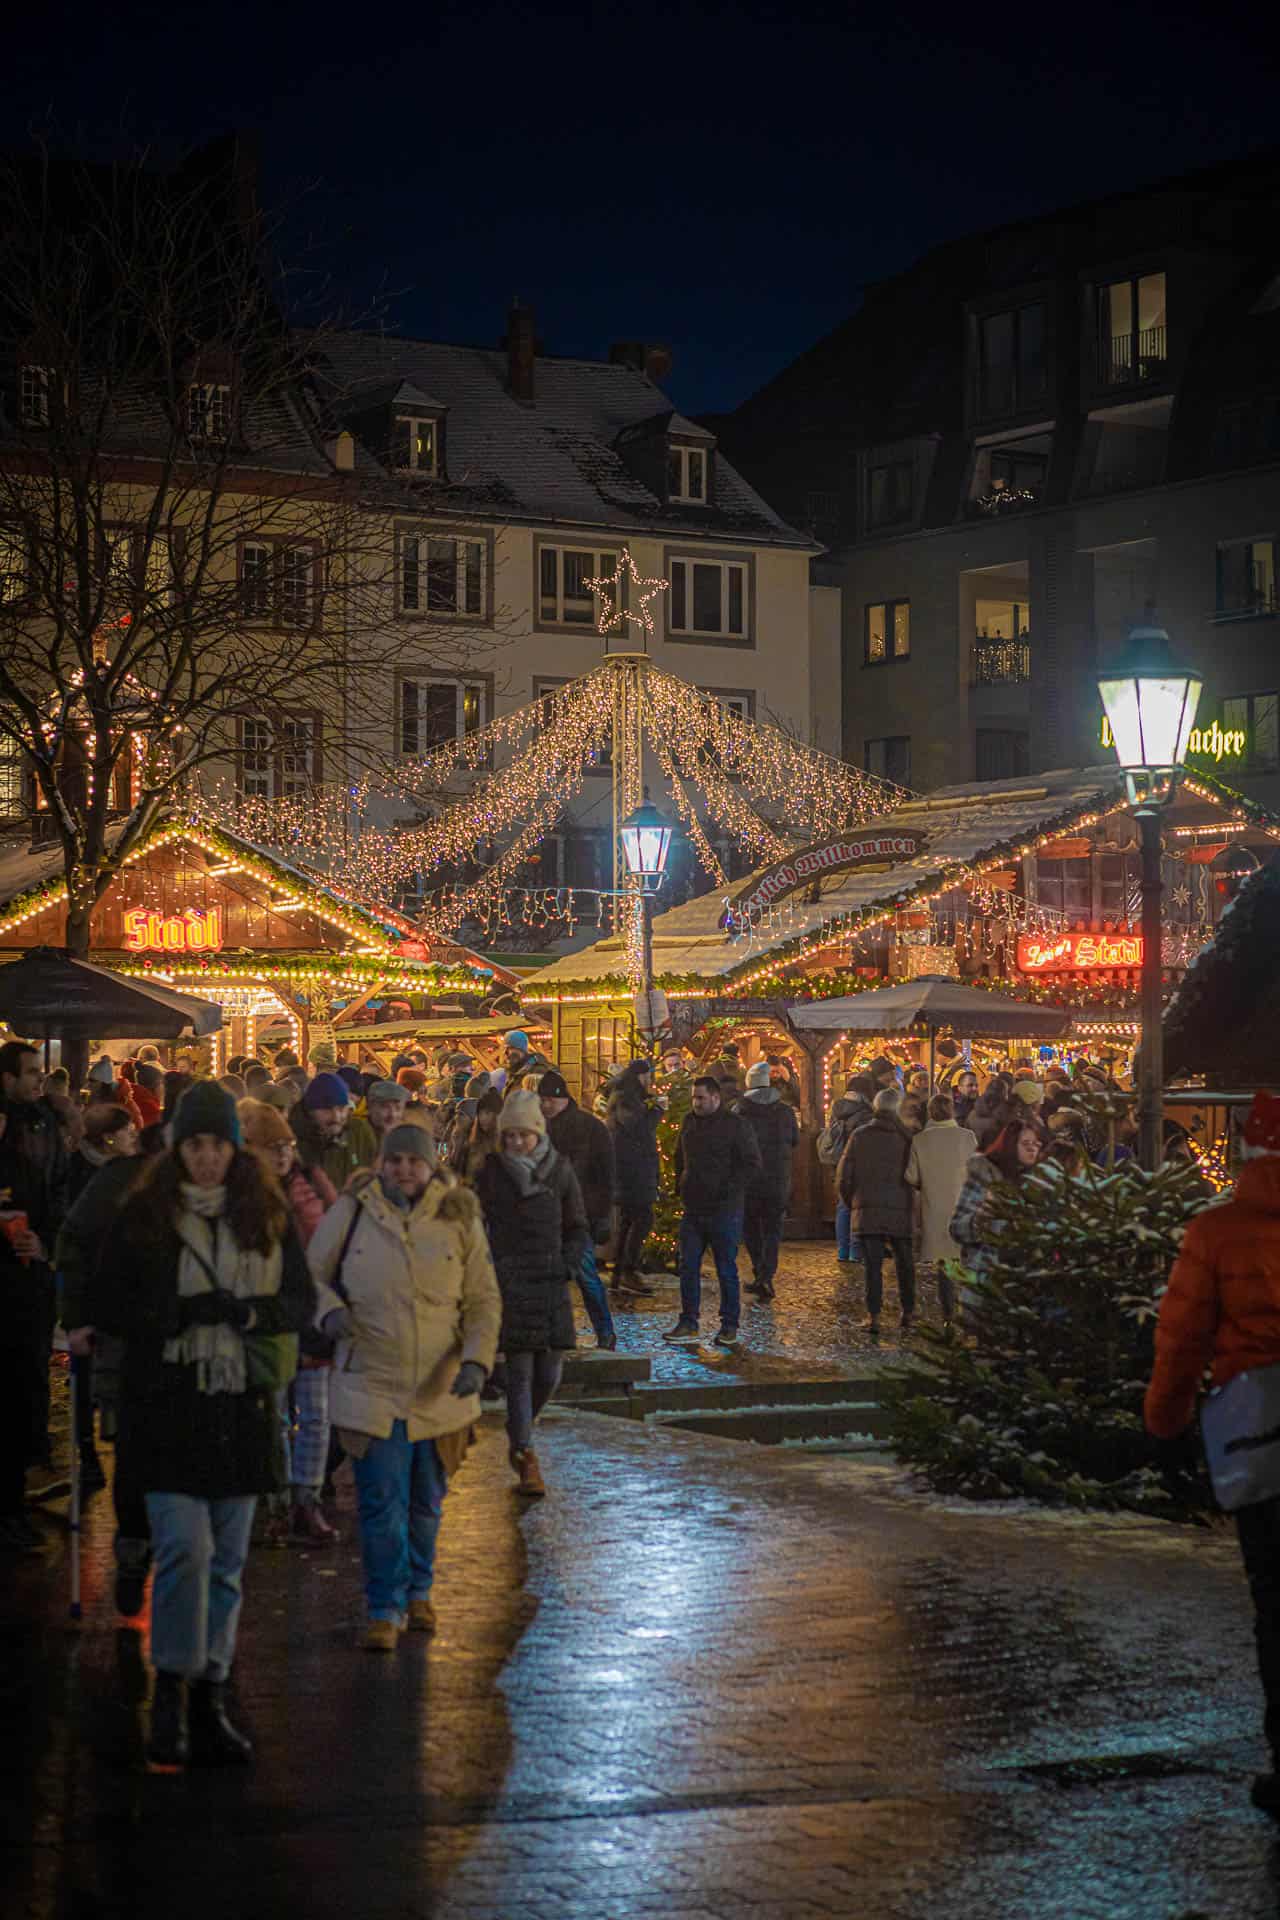 Kerstmarkt in Koblenz in het donker met mensen die rondlopen voor verlichte kramen. In het midden staat een paal waarvandaan snoeren lichtjes alle kanten op gaan, als een soort piramide.